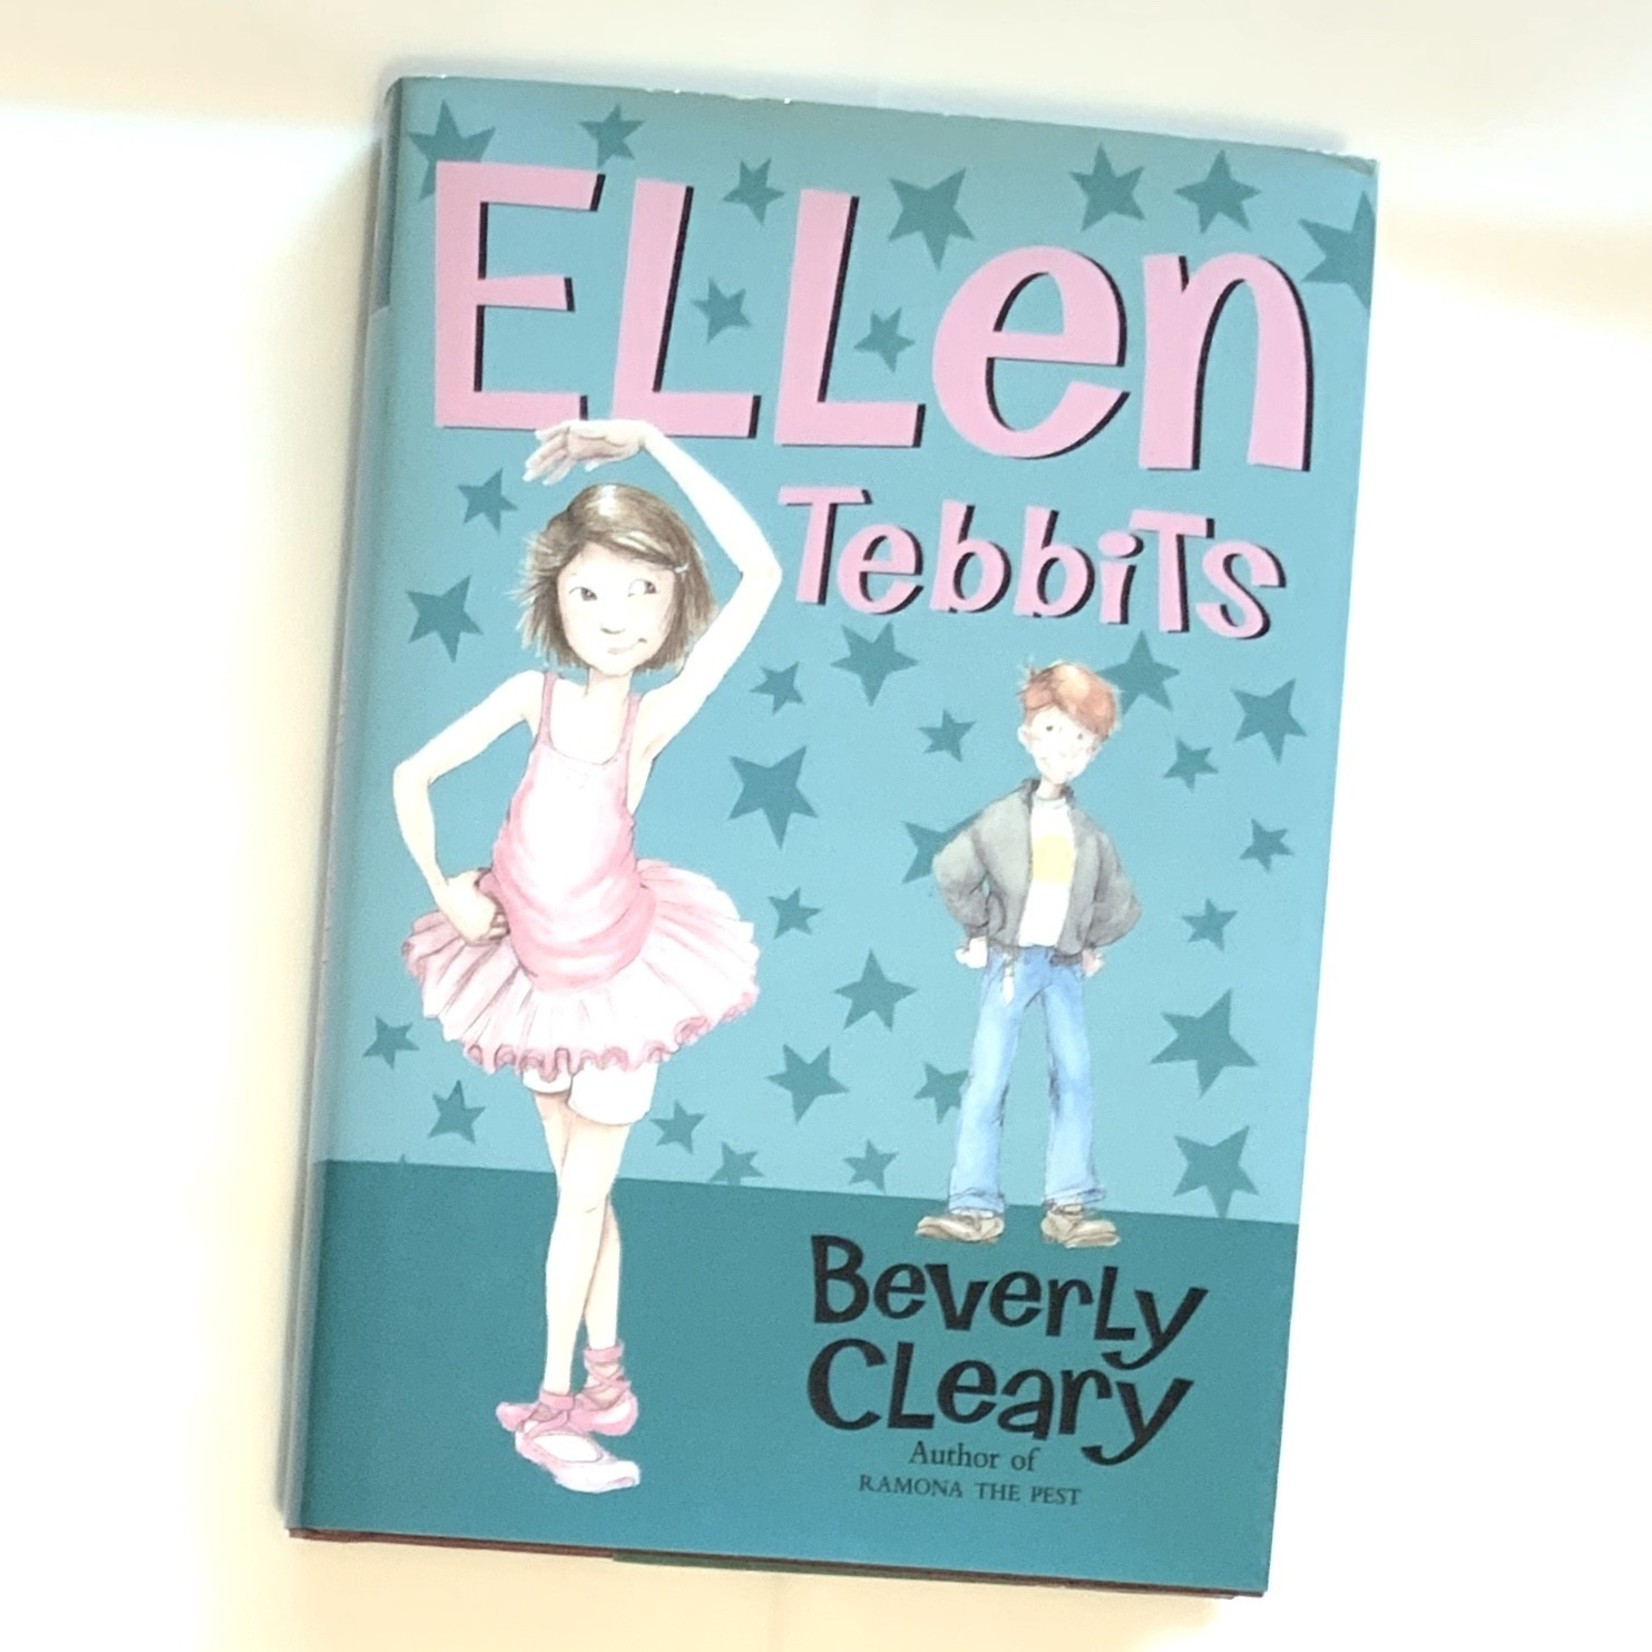 Ellen Tebbits